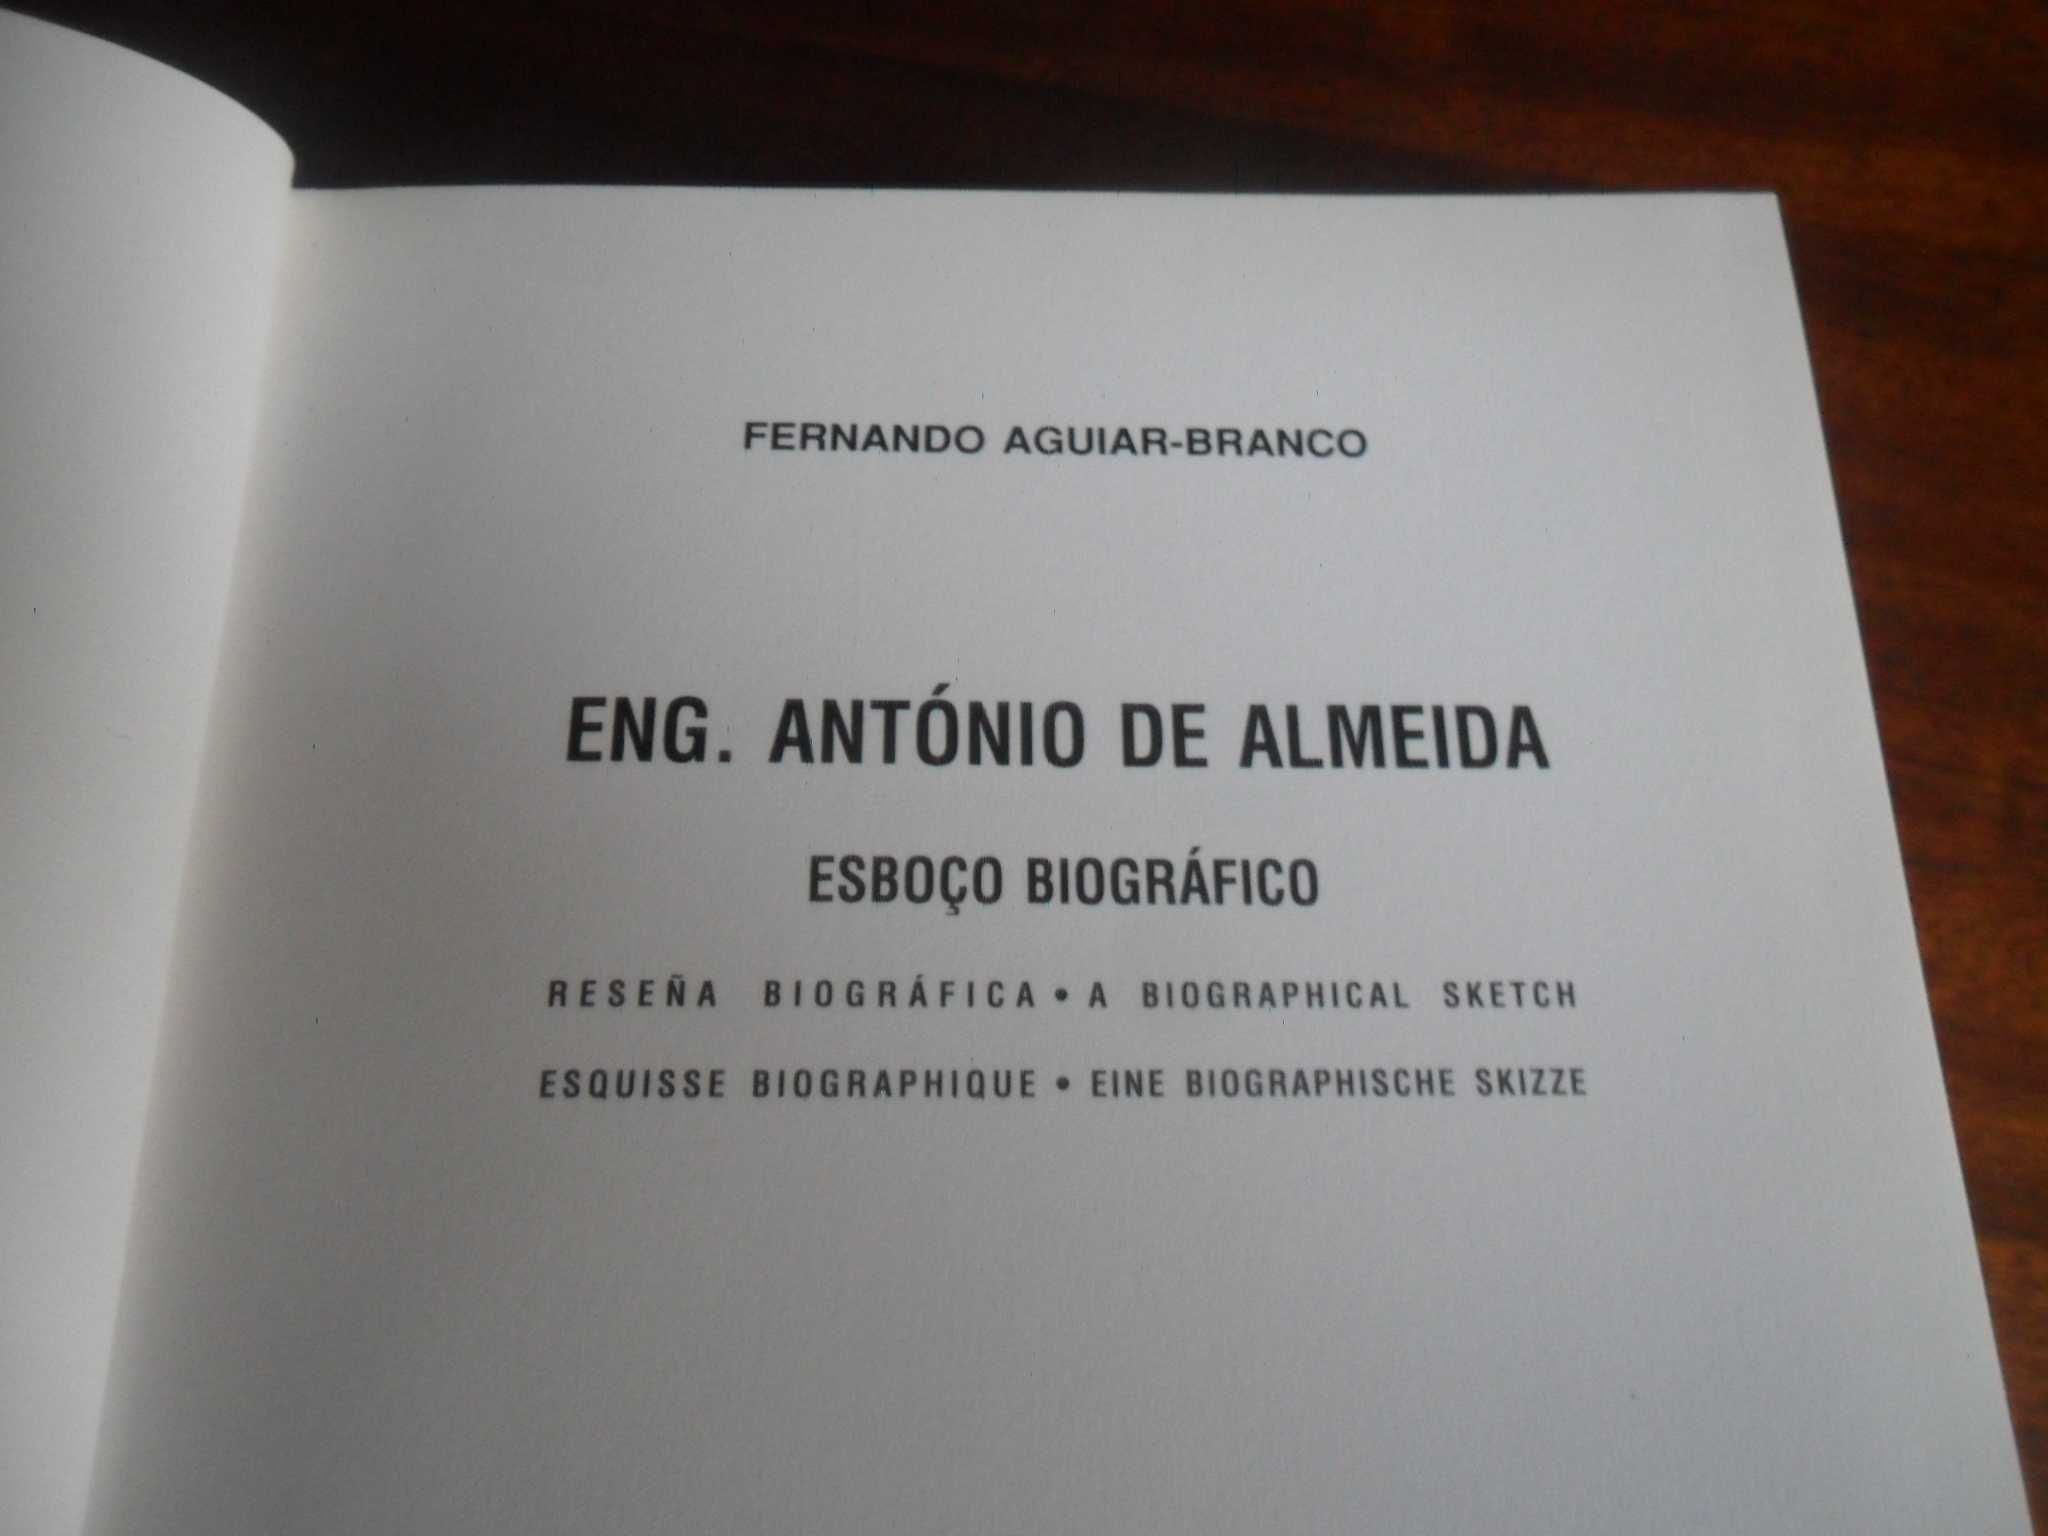 "Eng. António de Almeida (Esboço Biográfico) de Fernando Aguiar-Branco